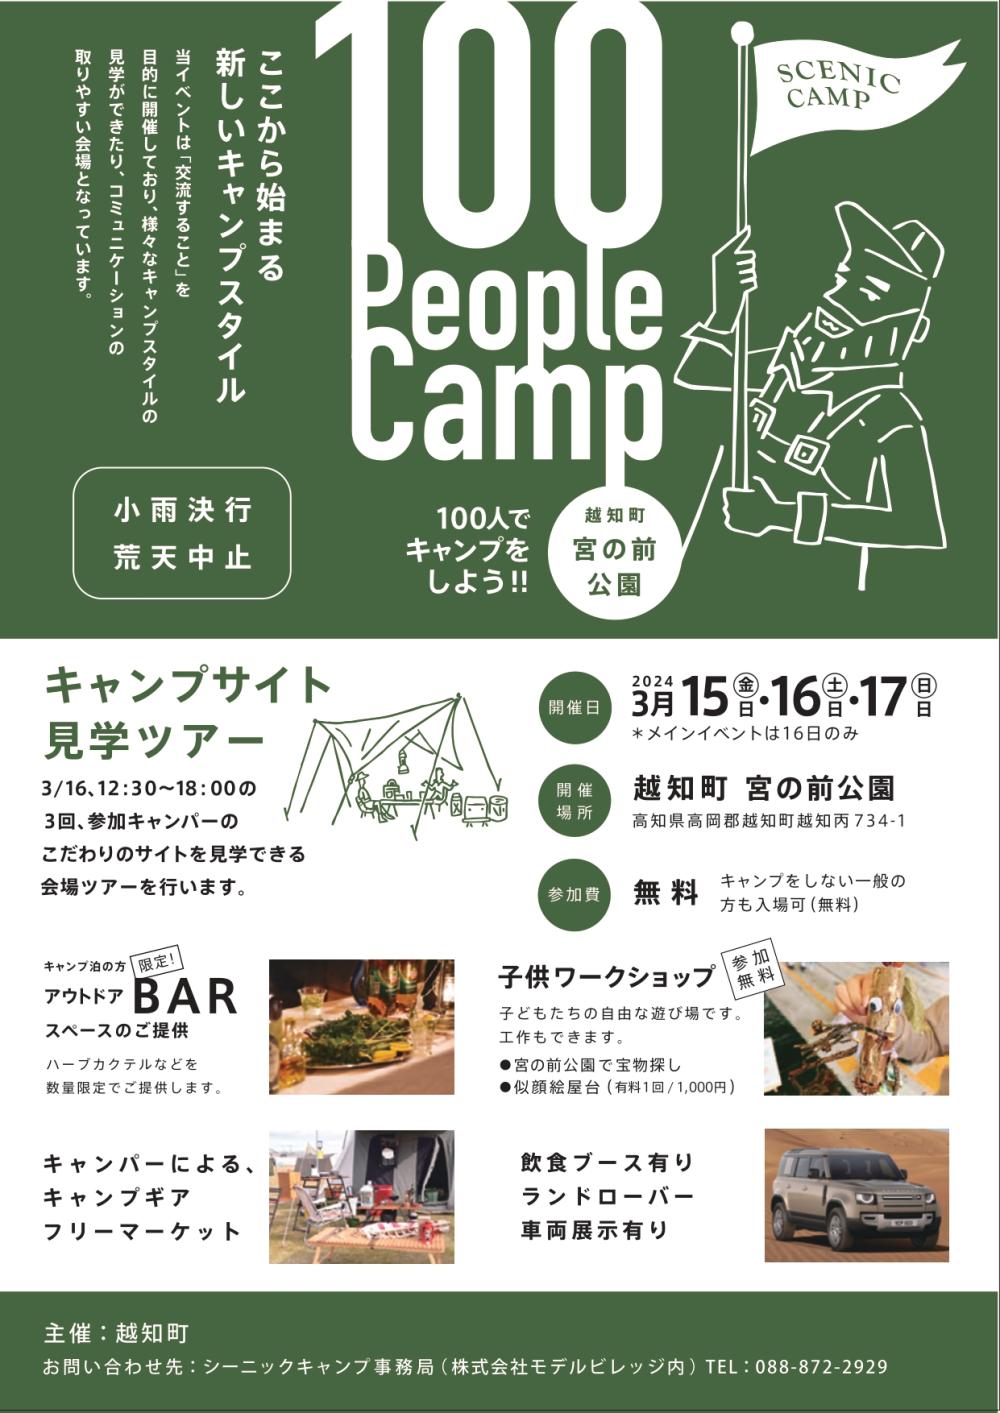 シーニックキャンプ 100 People  Camp  in  越知町宮の前公園